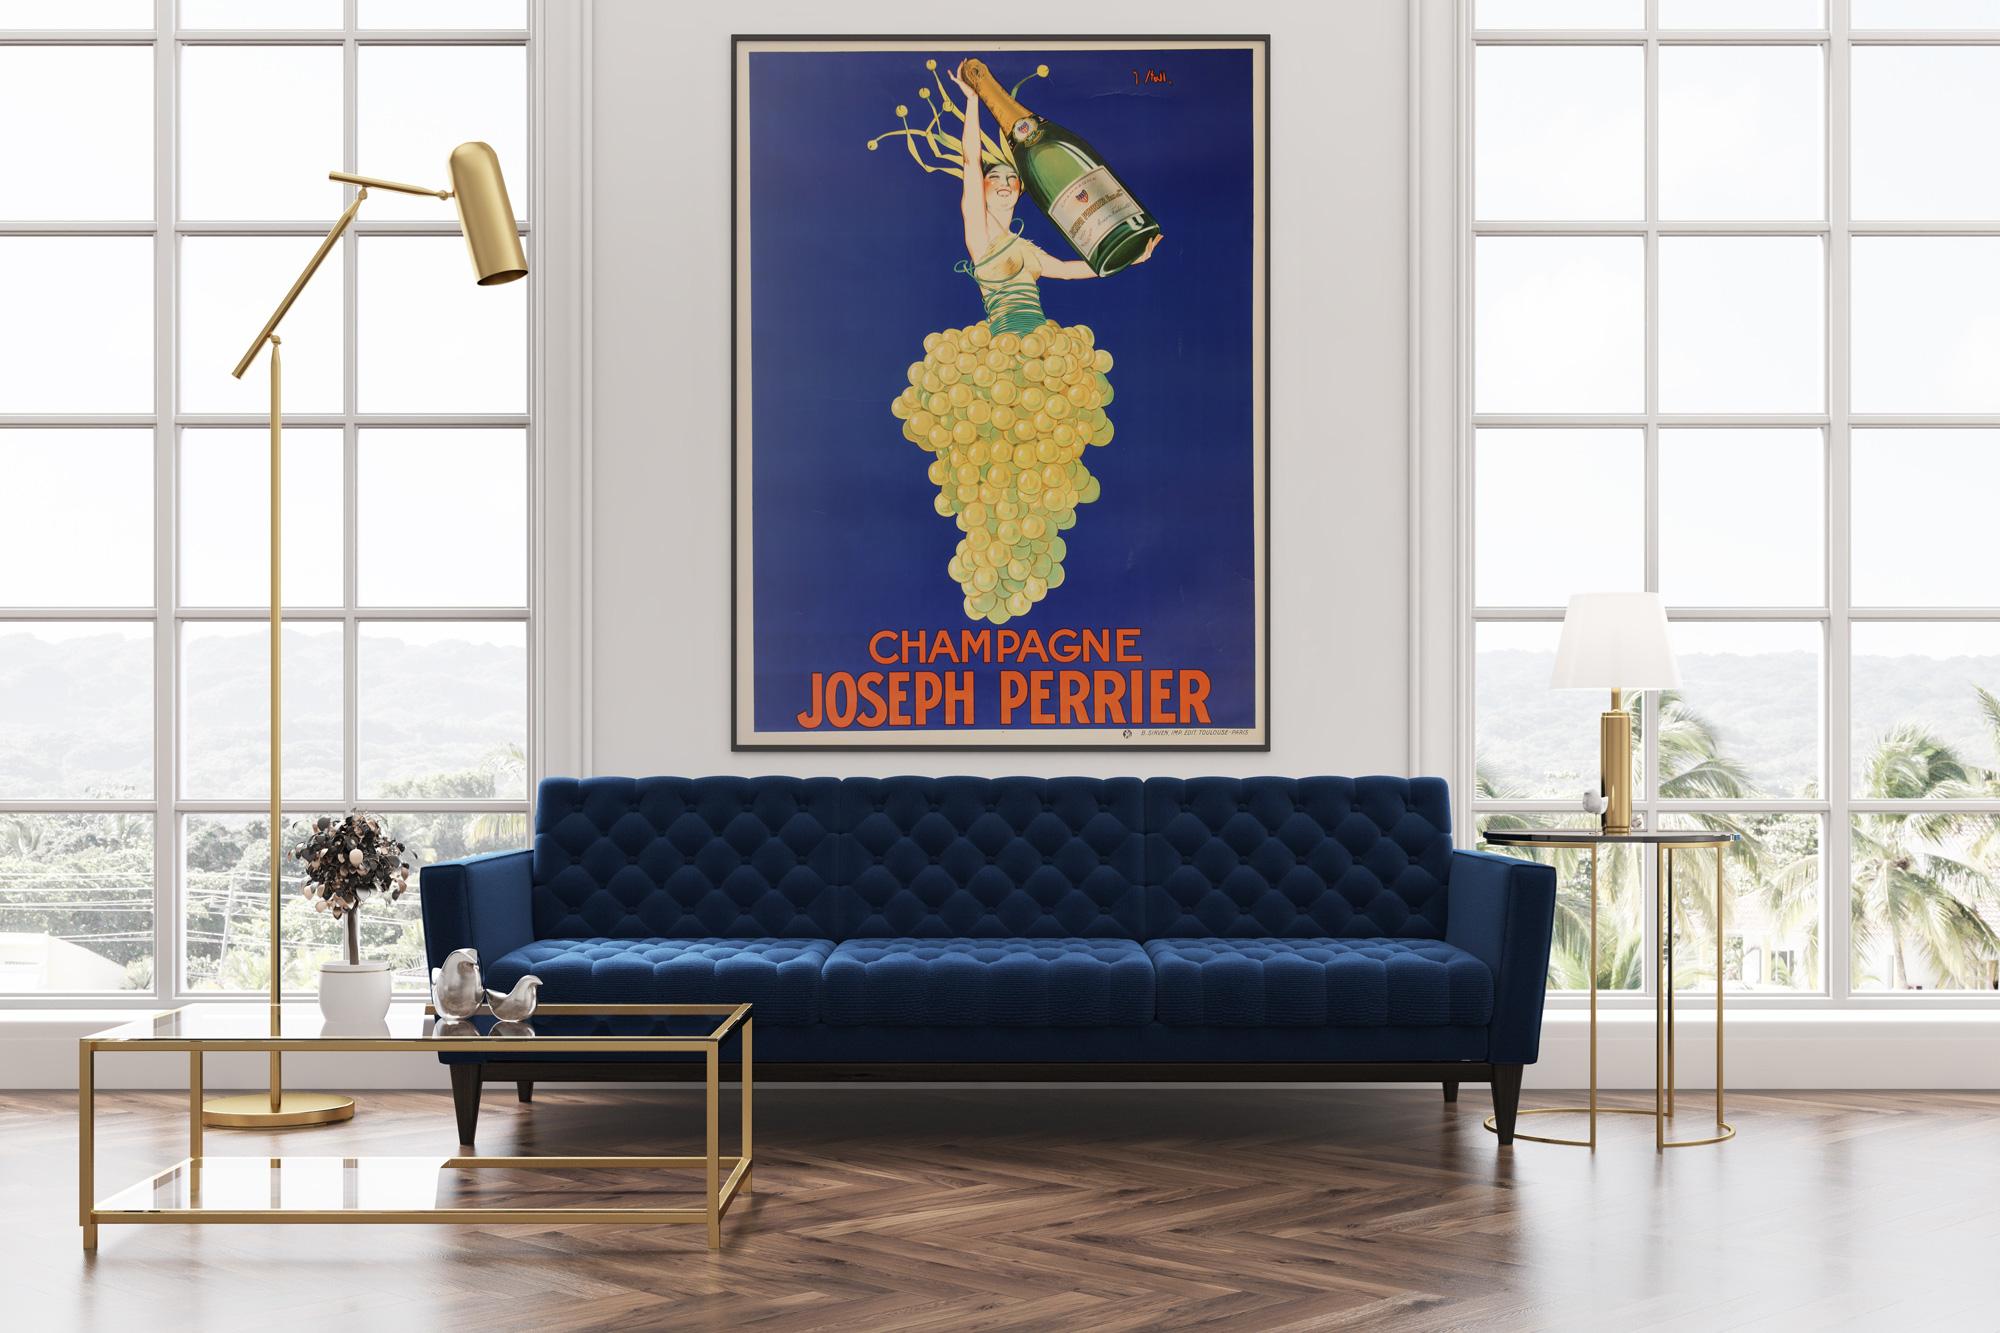 Dieses Originalplakat des französischen Champagners Joseph Perrier aus der Zeit um 1930 zeichnet sich durch ein fabelhaftes Art-Déco-Design von Joseph Stall aus. Als eines der berühmtesten Champagner-Plakate sorgt Stall mit seinem Entwurf einer